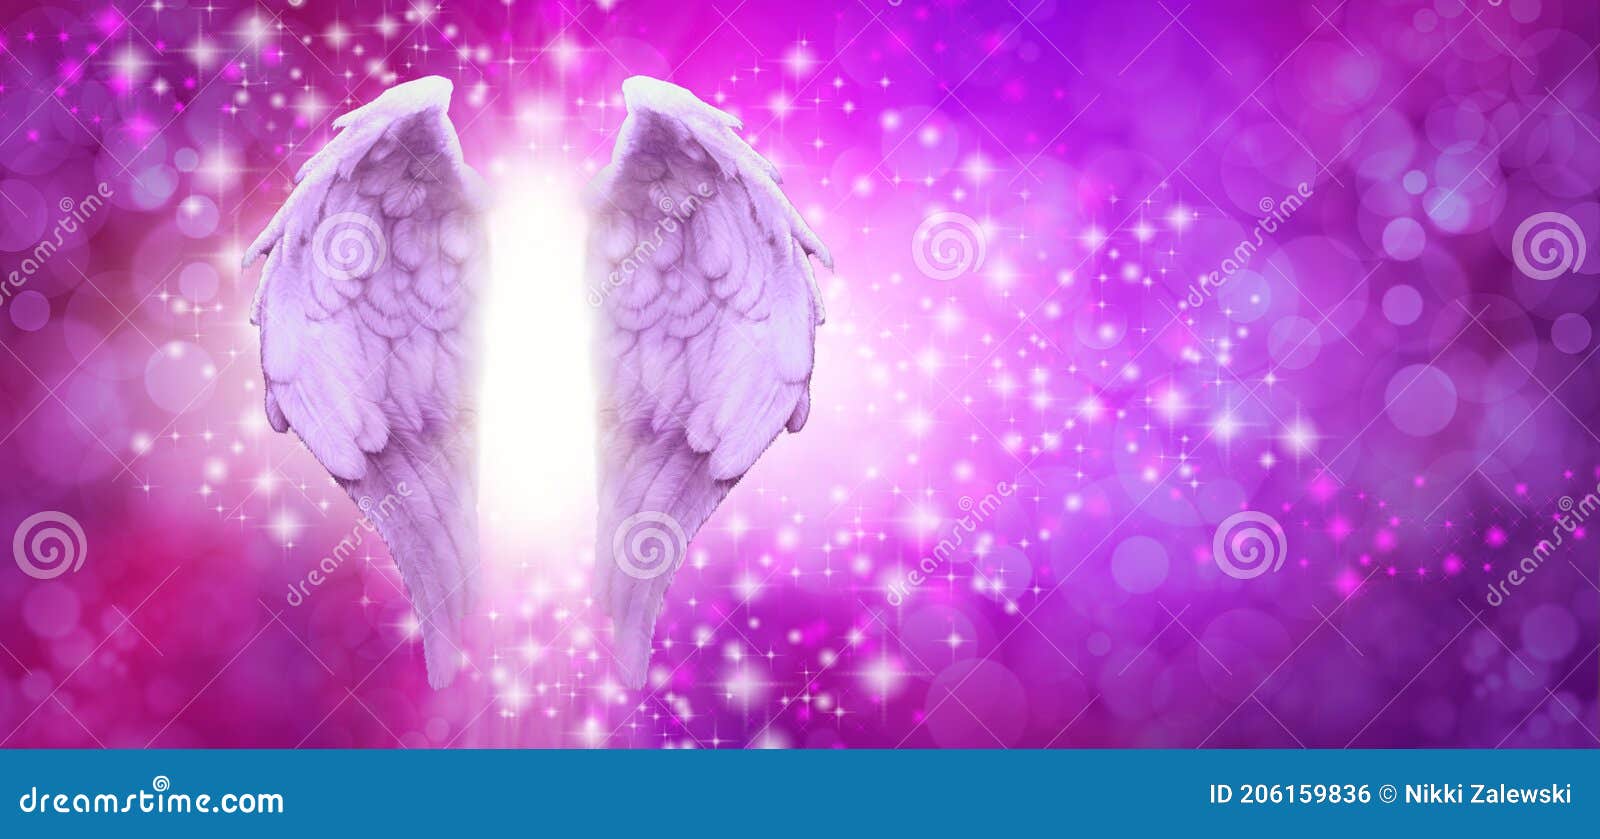 purple angel wings wallpaper